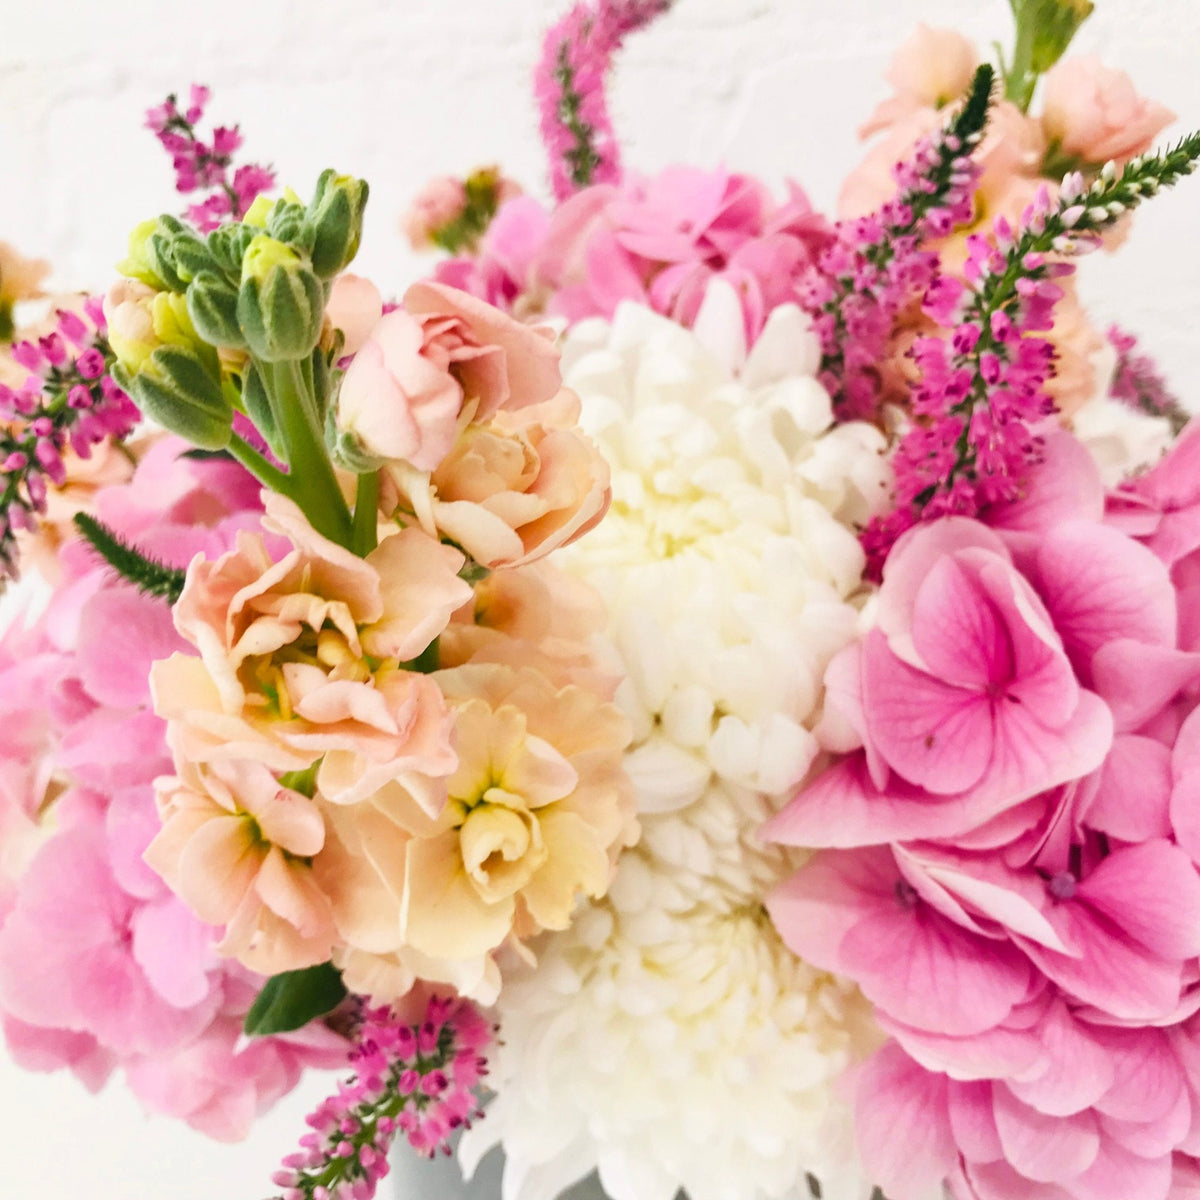 Mother's Gentleness Bouquet - Amazing Graze Flowers